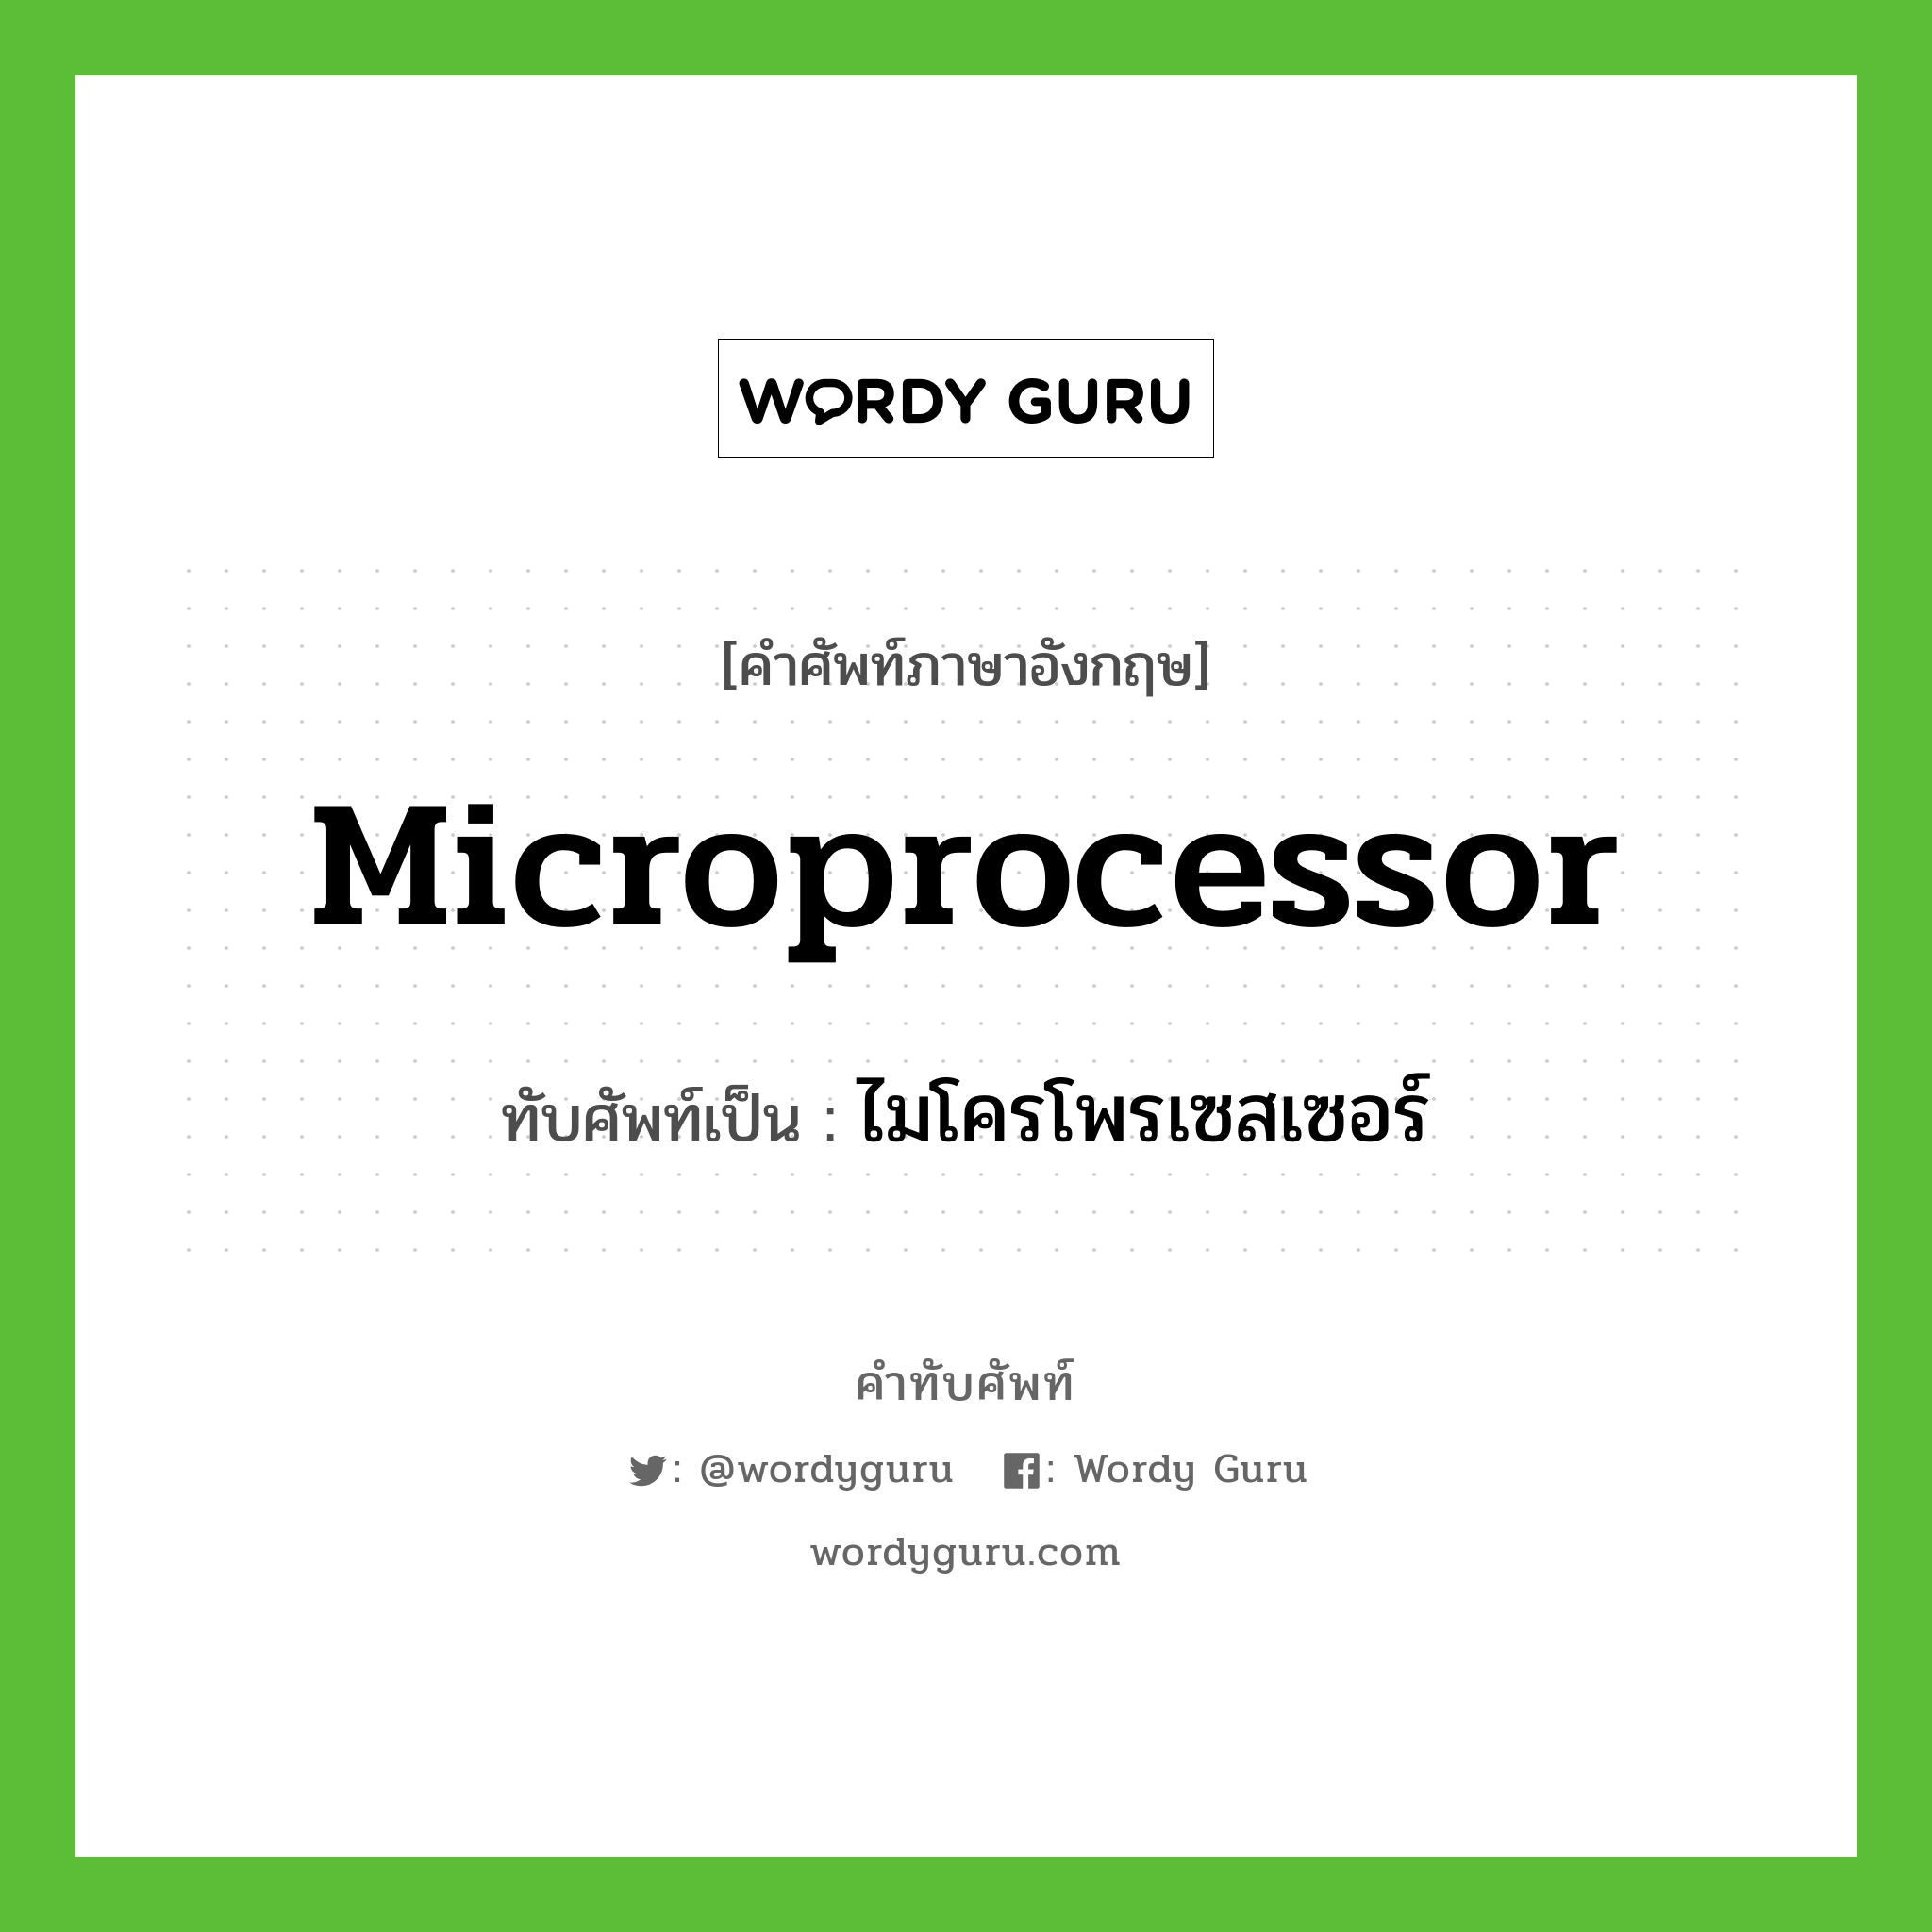 ไมโครโพรเซสเซอร์ เขียนอย่างไร?, คำศัพท์ภาษาอังกฤษ ไมโครโพรเซสเซอร์ ทับศัพท์เป็น microprocessor